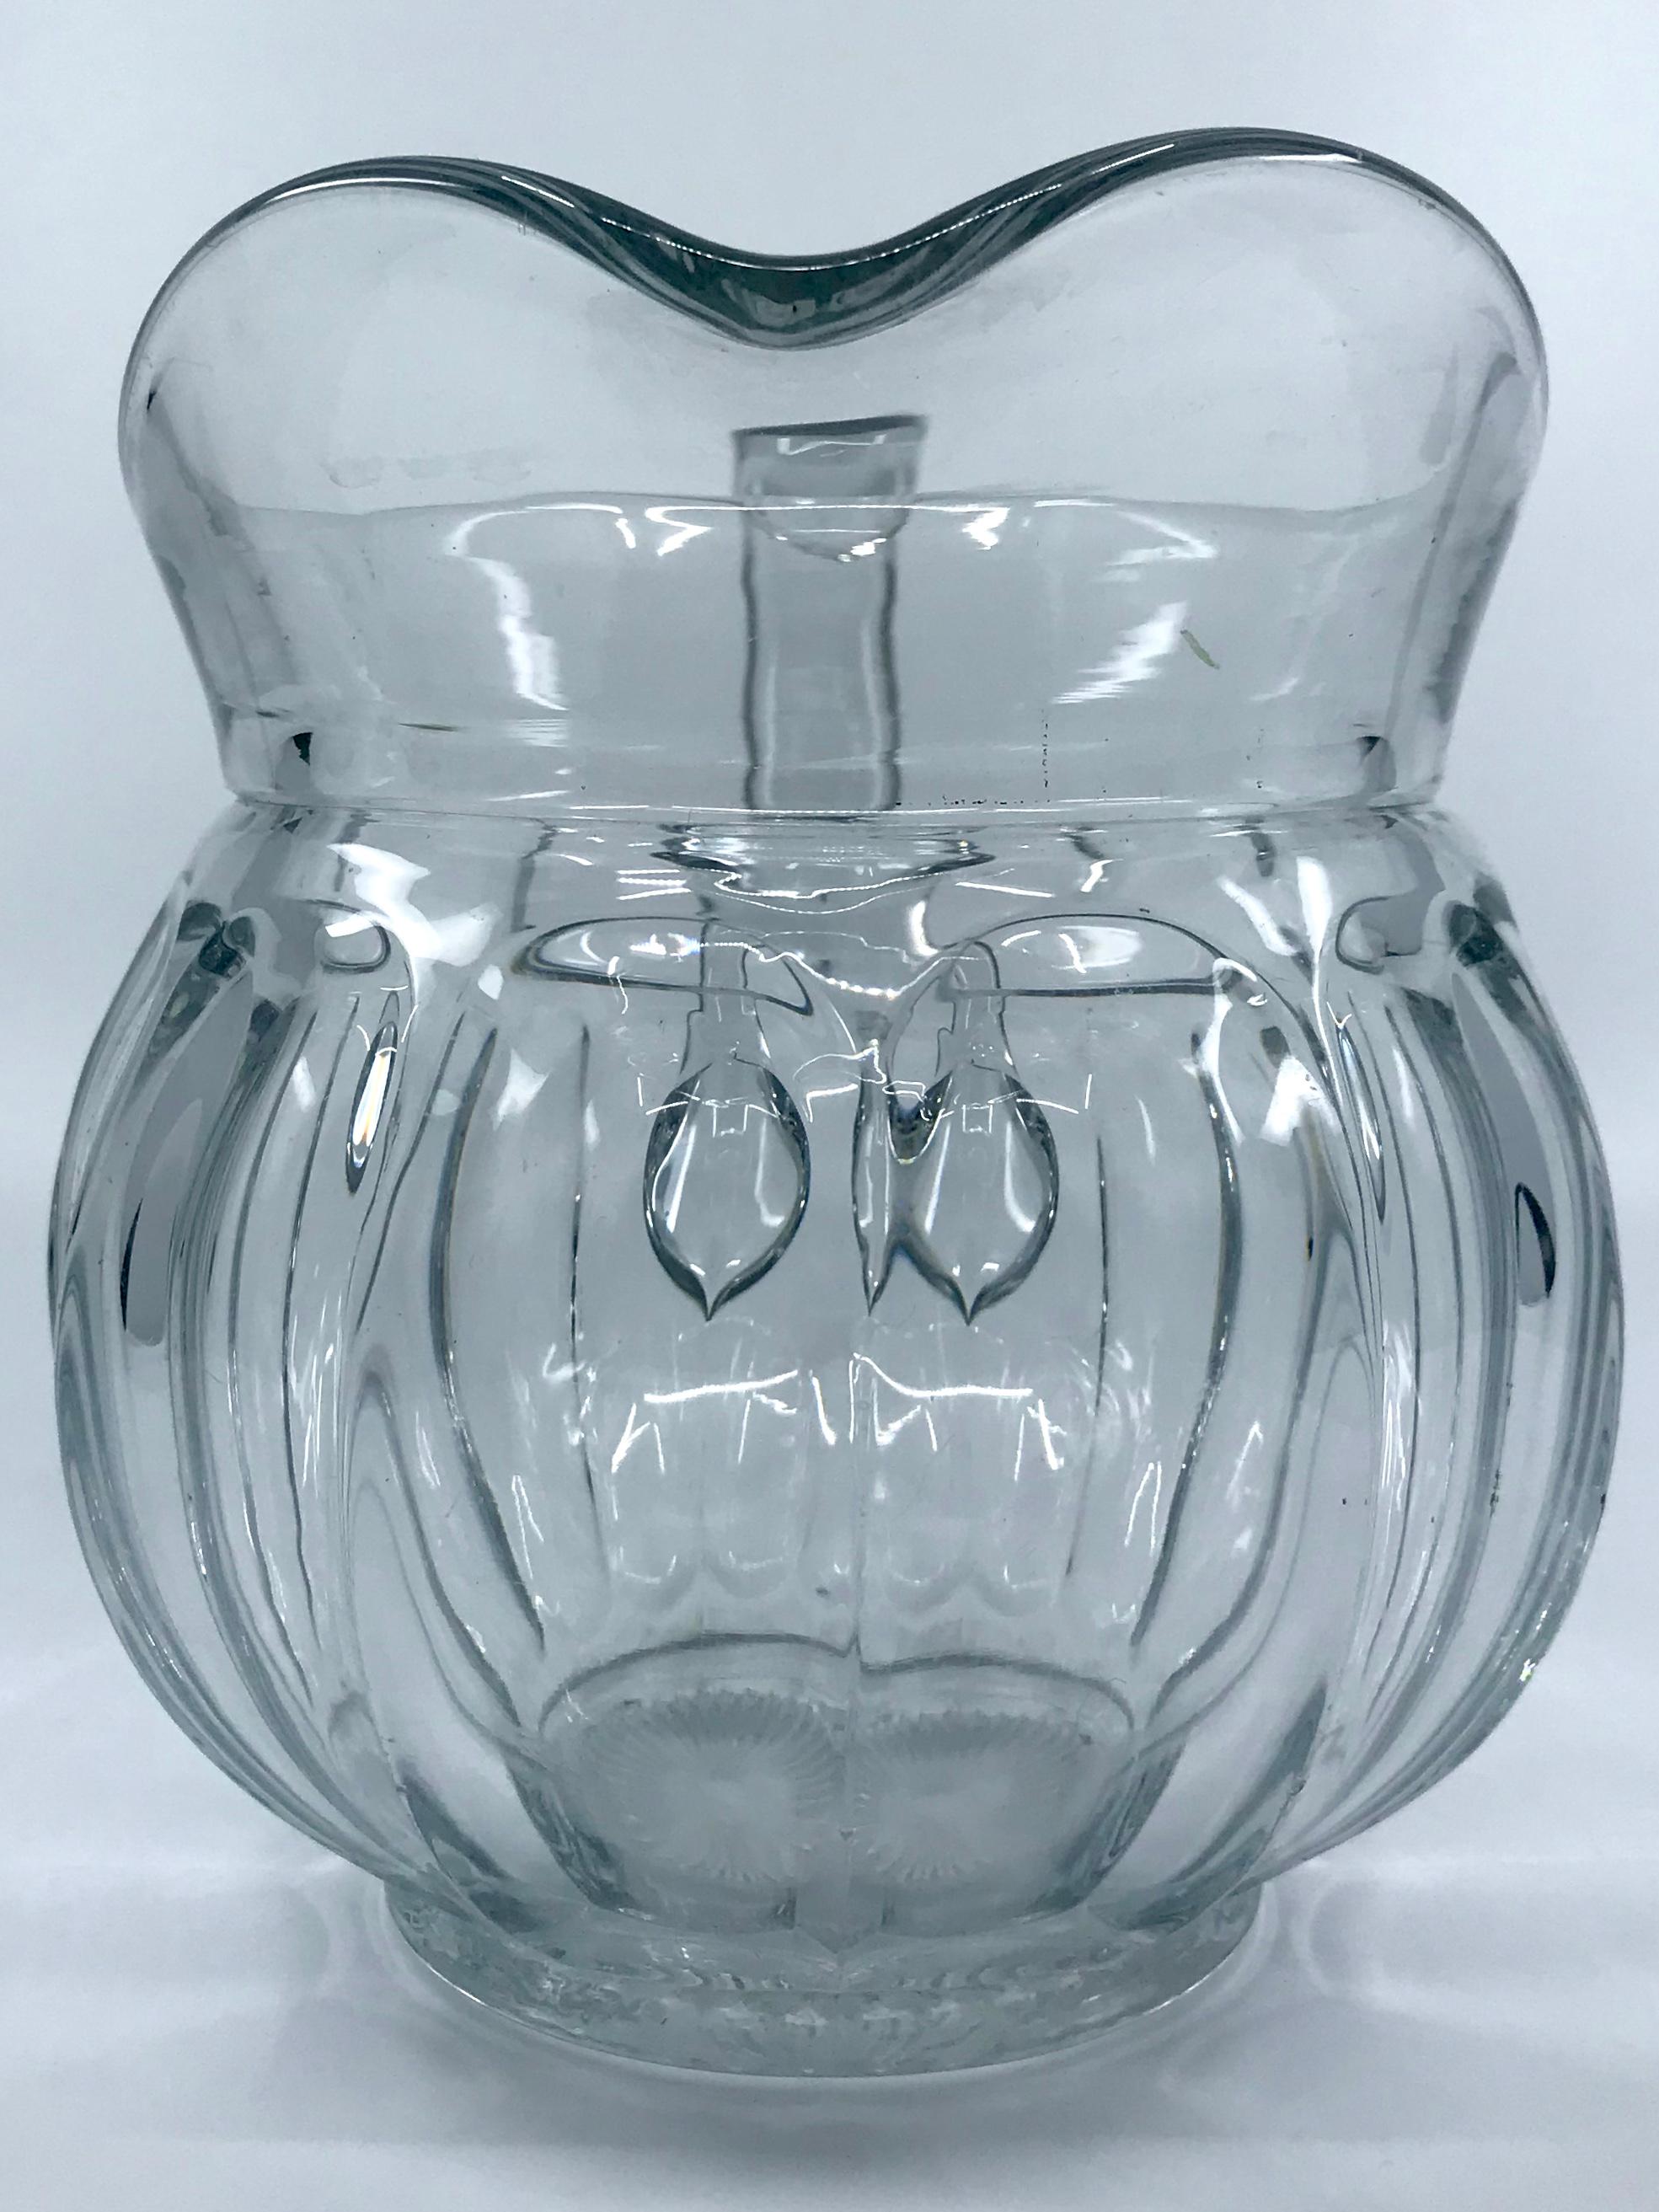 heisey glass pitcher